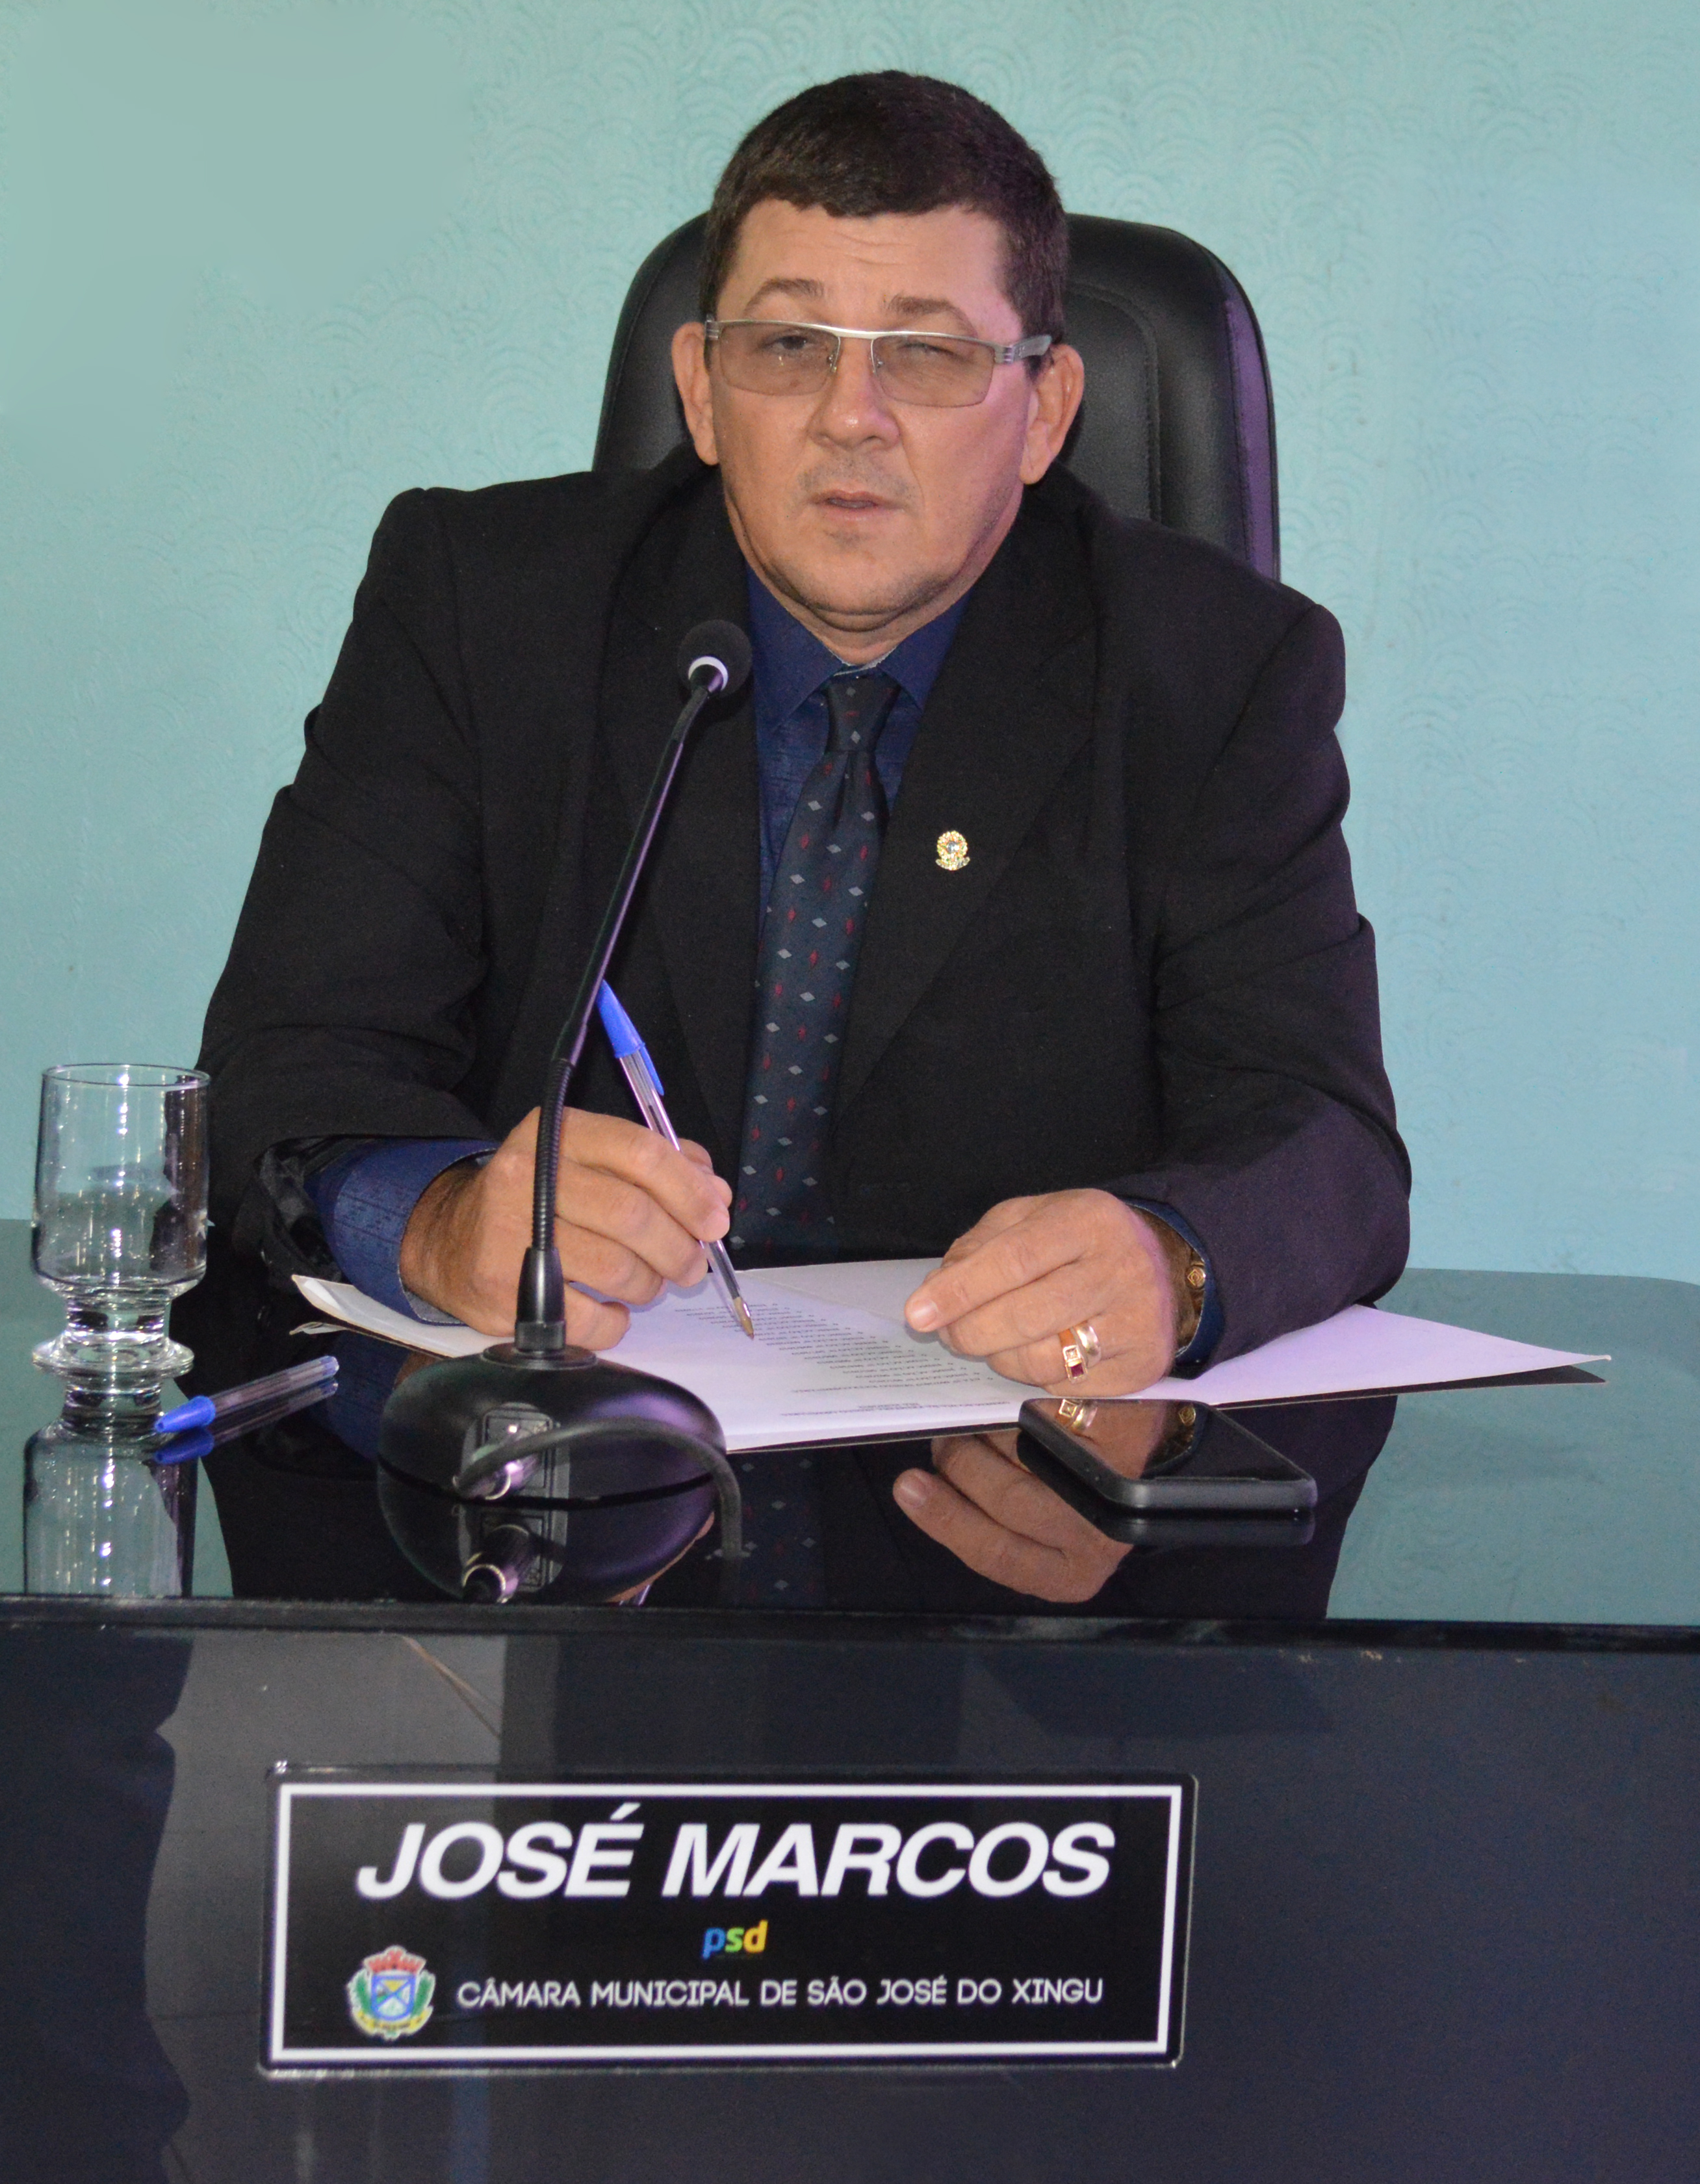 José Marcos